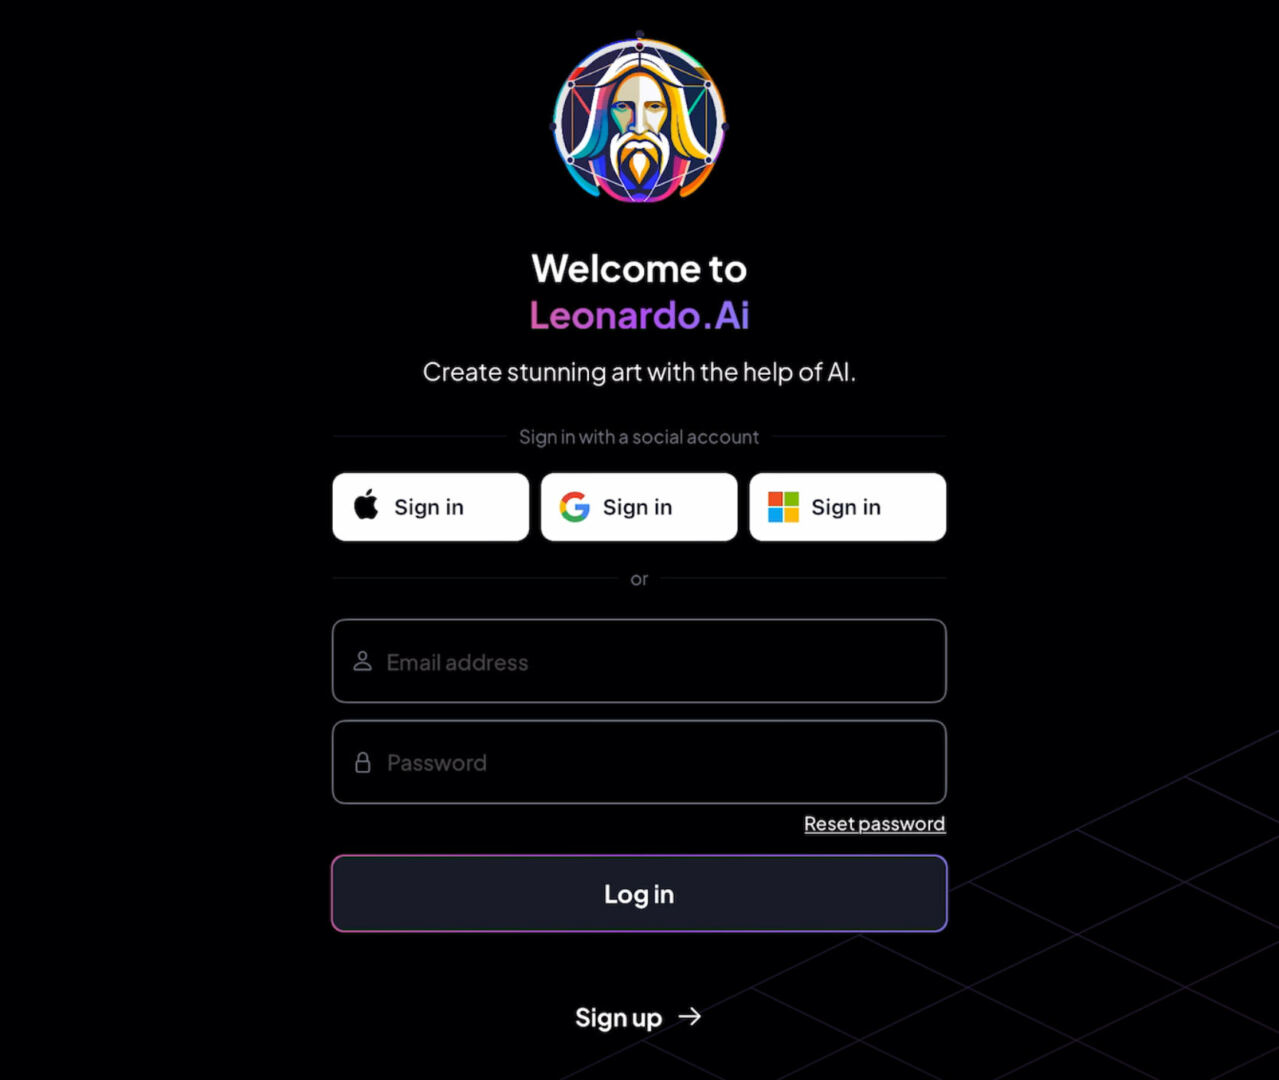 Sign-up screen of Leonardo.ai app